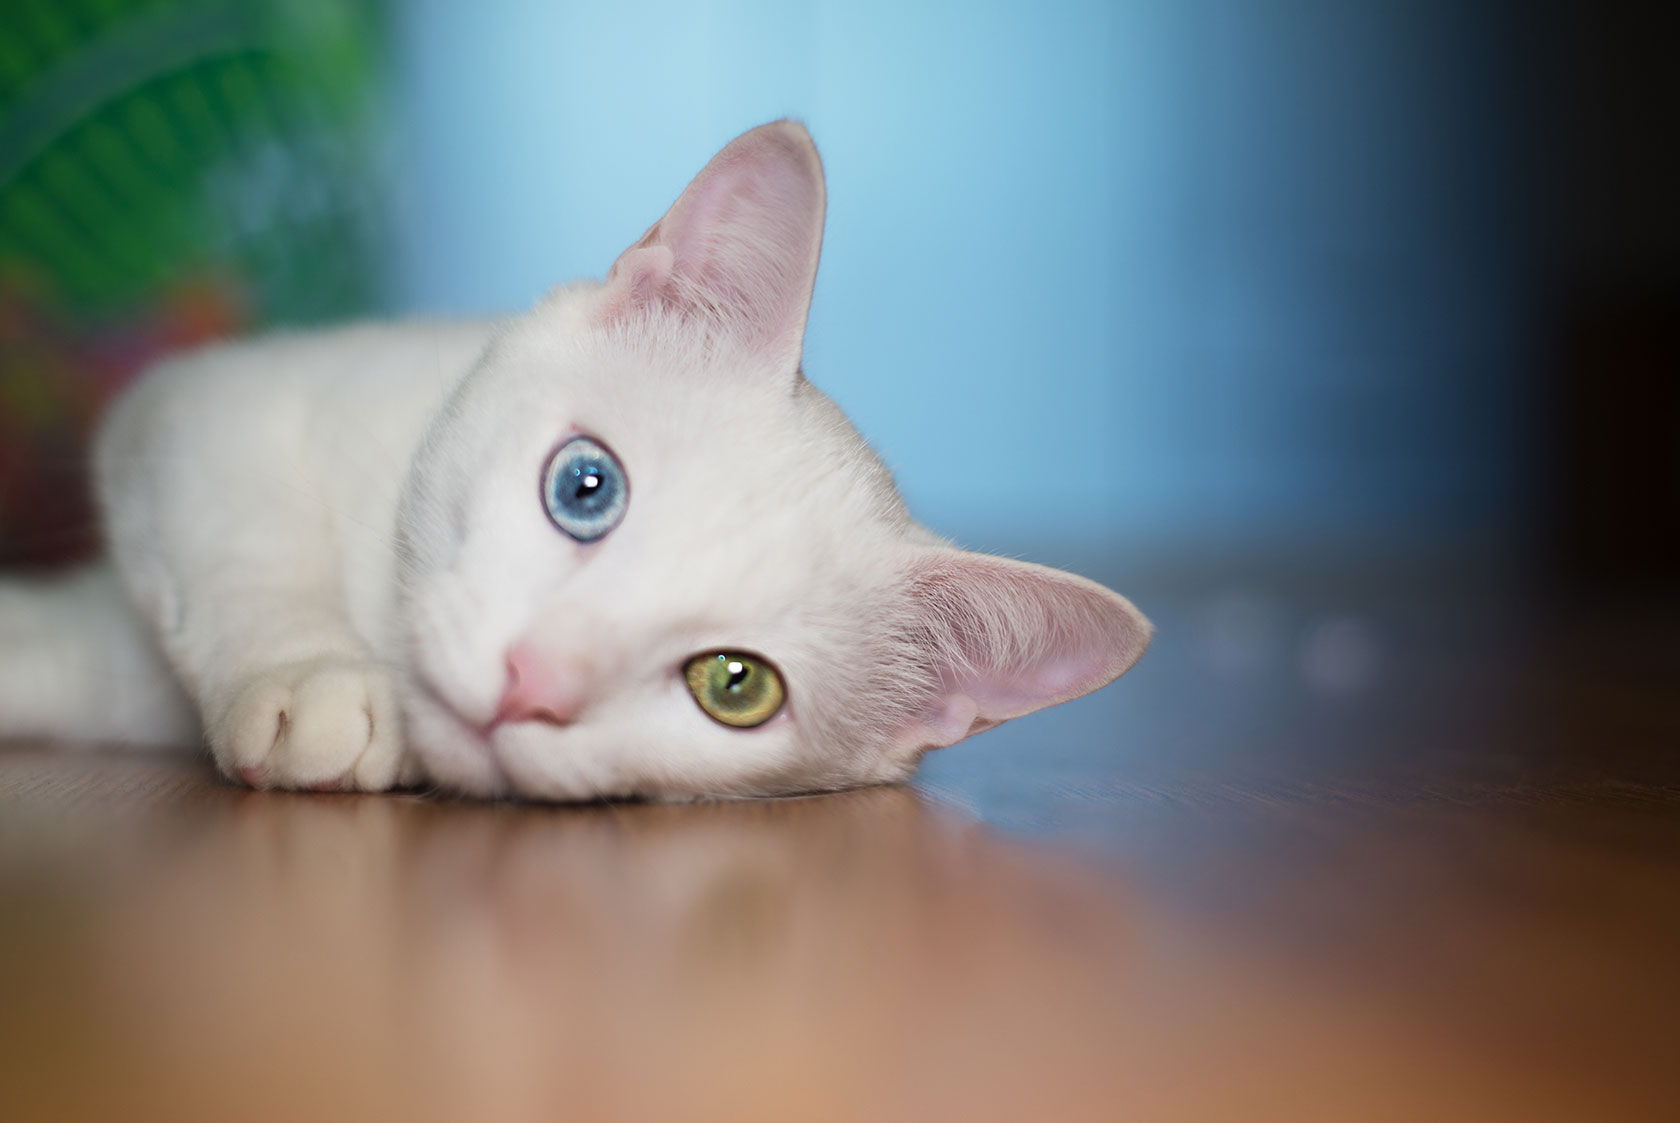 White cat with heterochromia